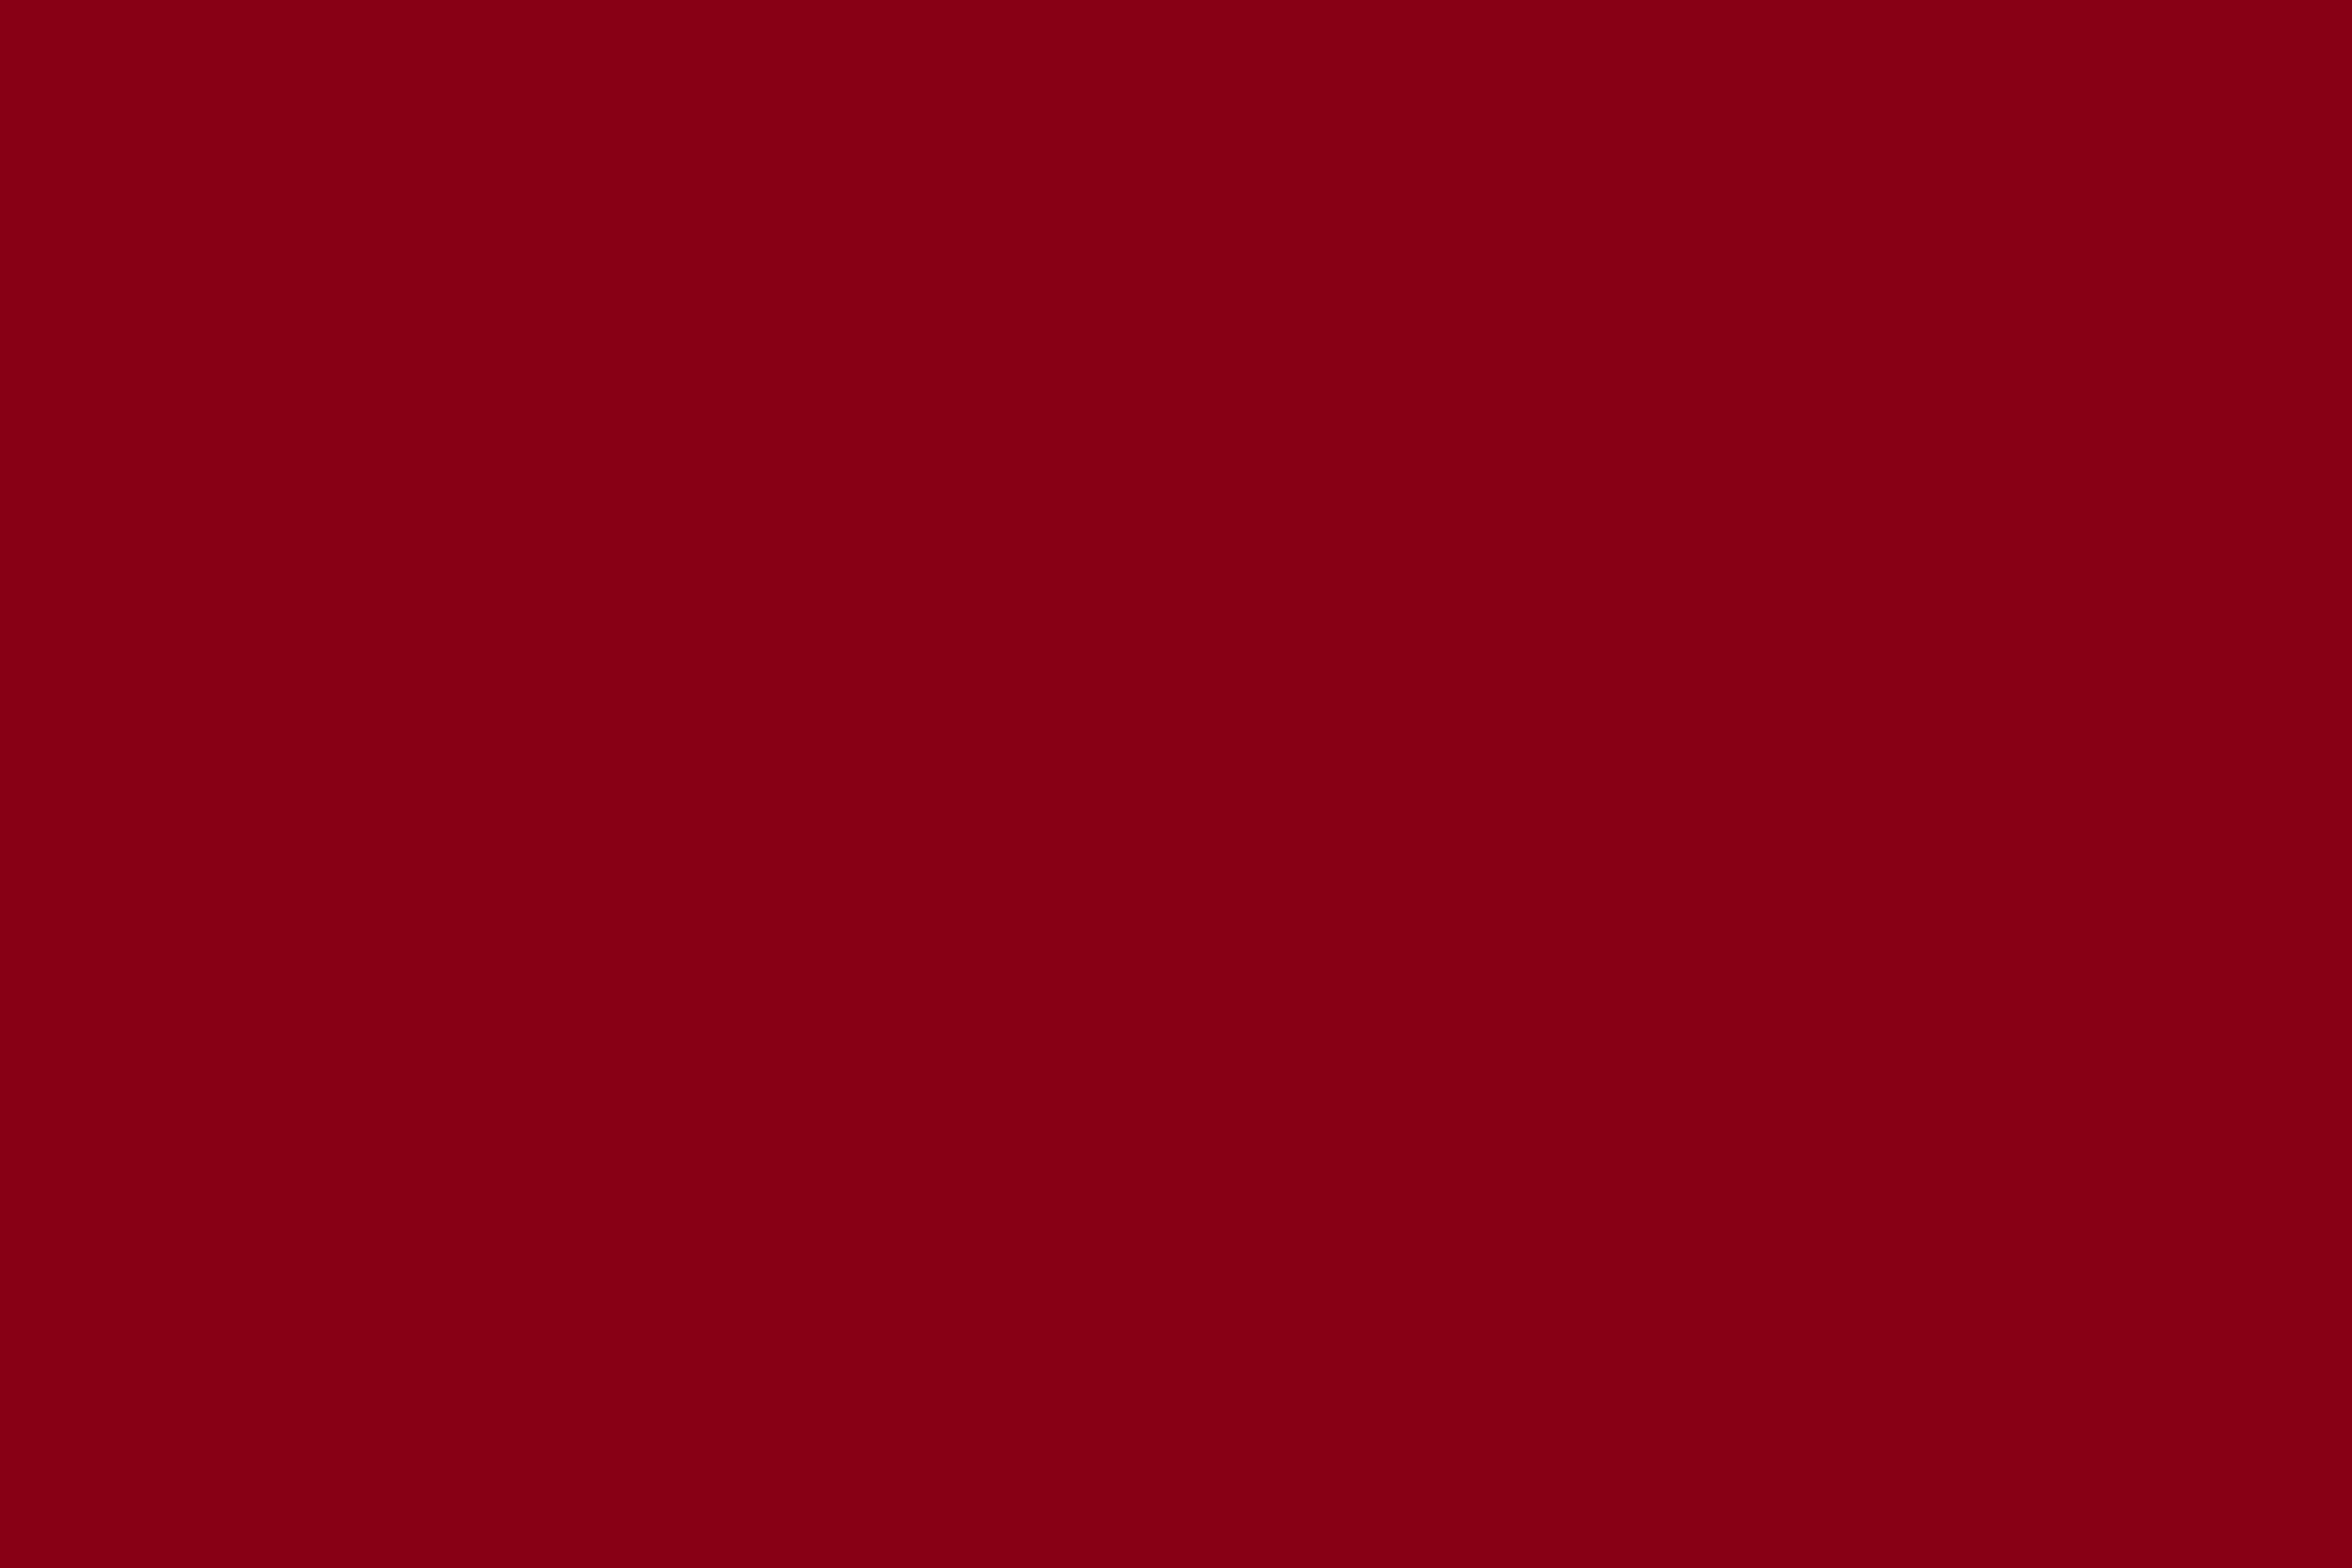 Dark Red Wallpaper Background 6000×4000 px